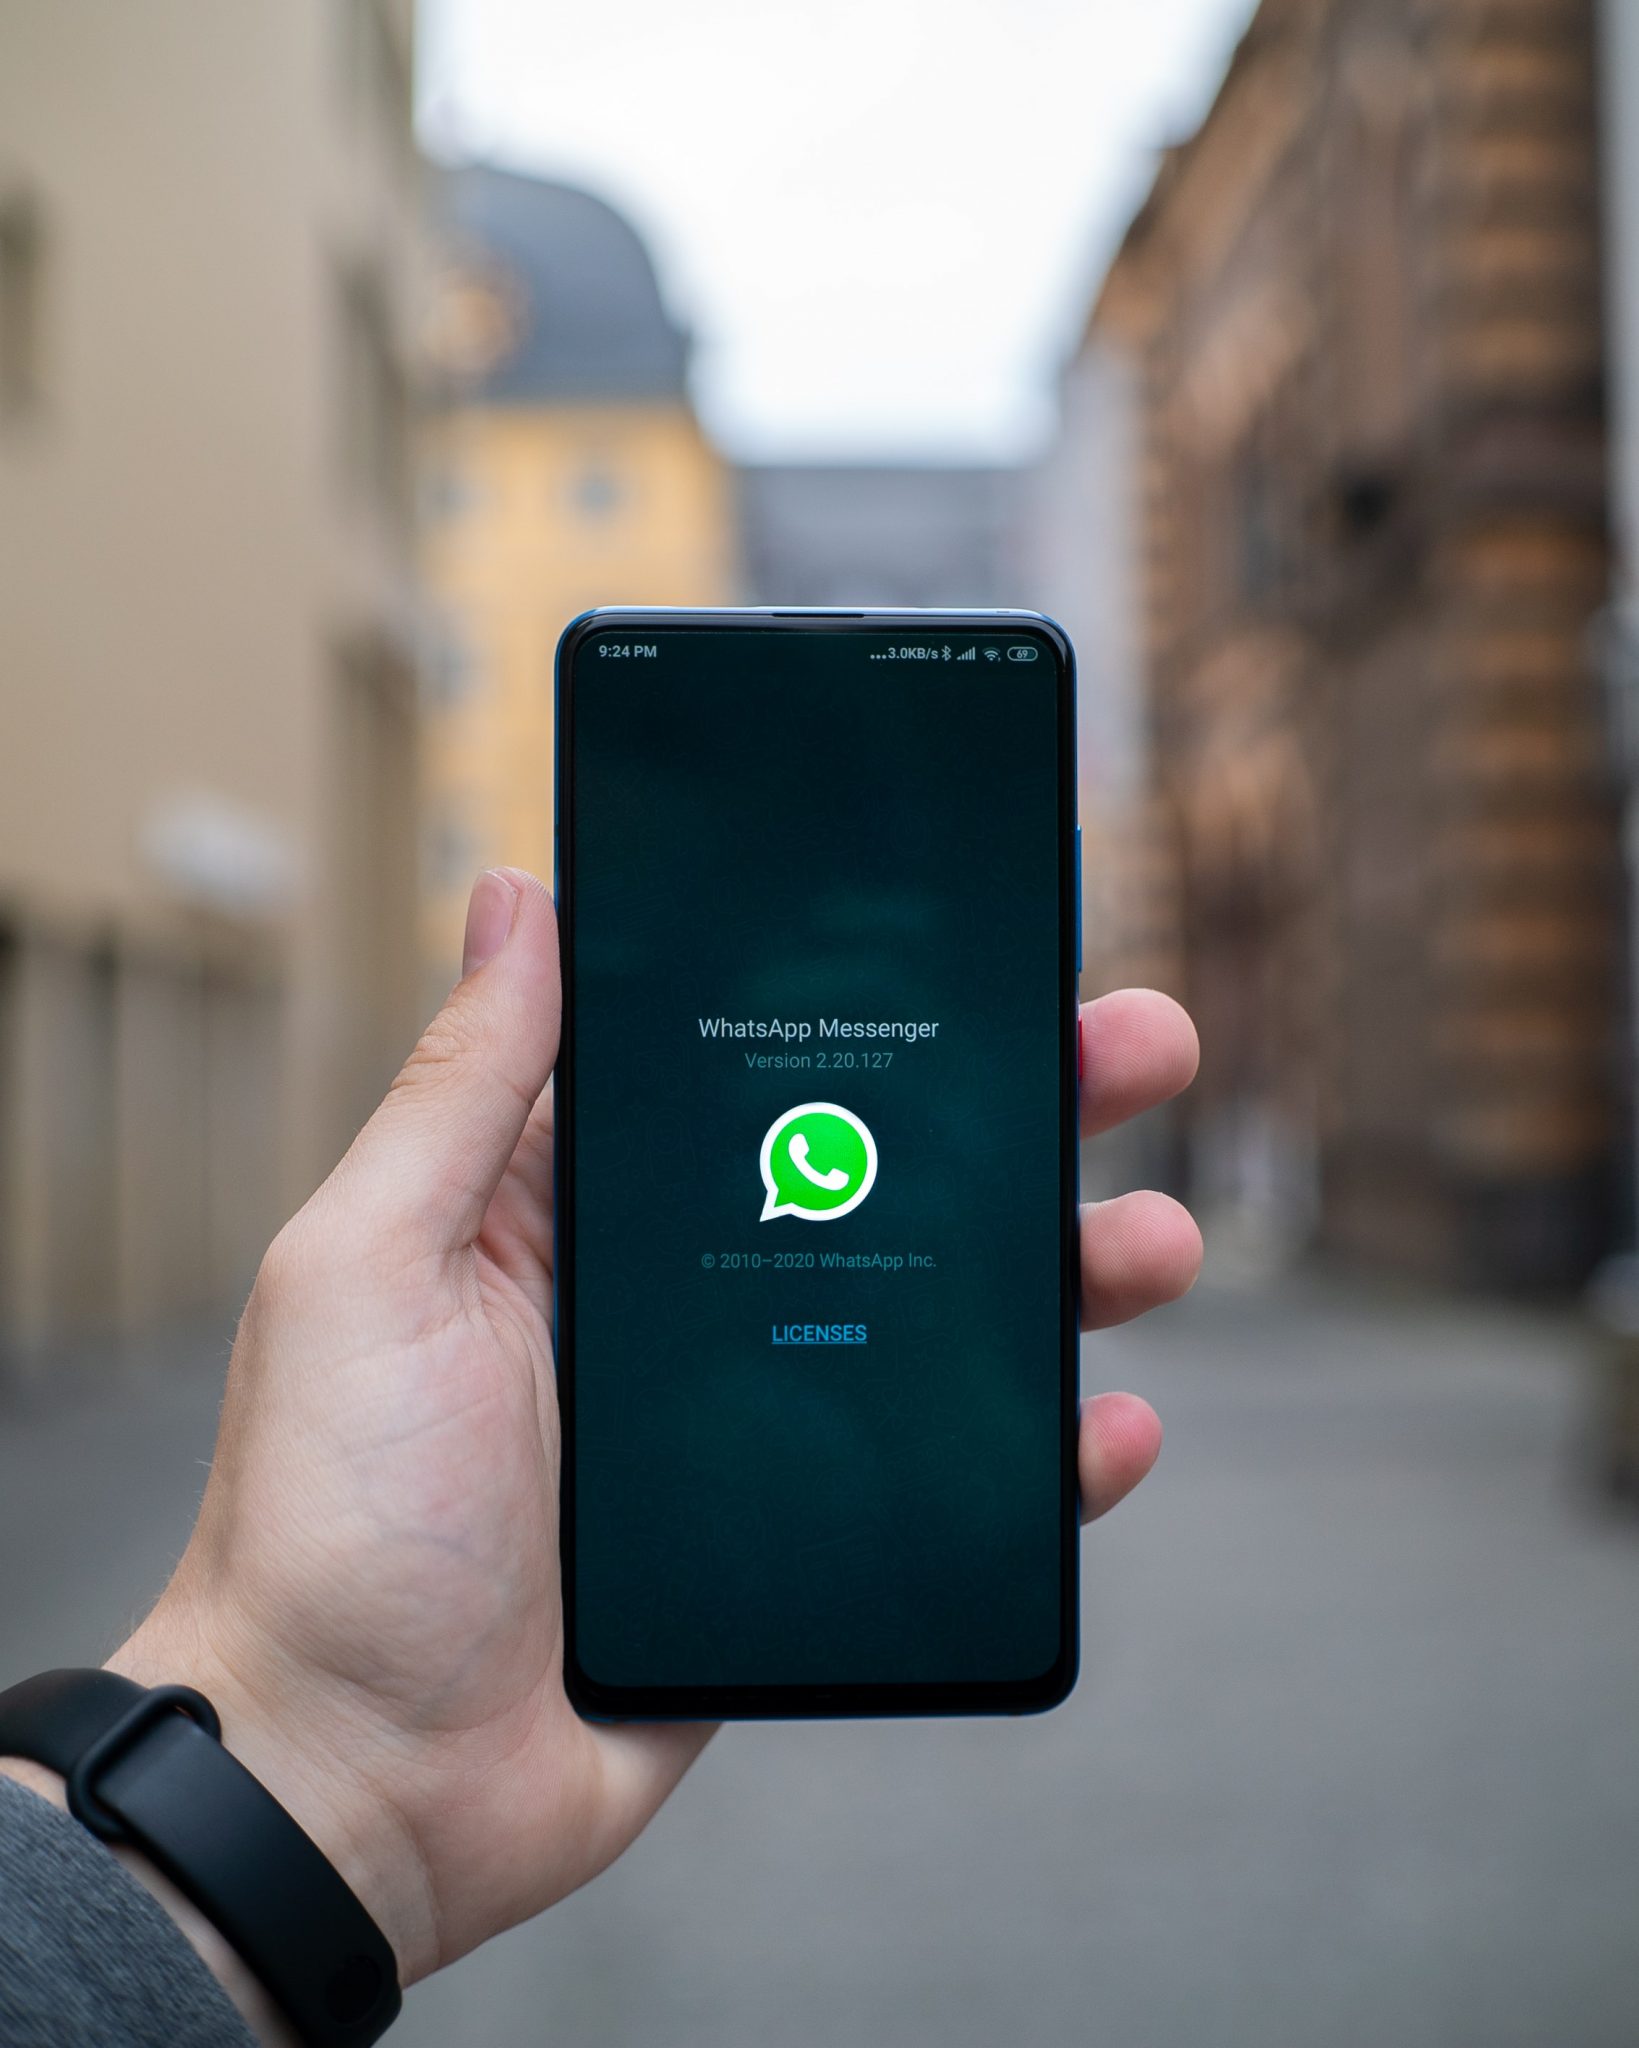 هل أرسلت صورة خاطئة إلى الدردشة الجماعية؟ إليك كيفية حذف رسالة WhatsApp إلى الأبد